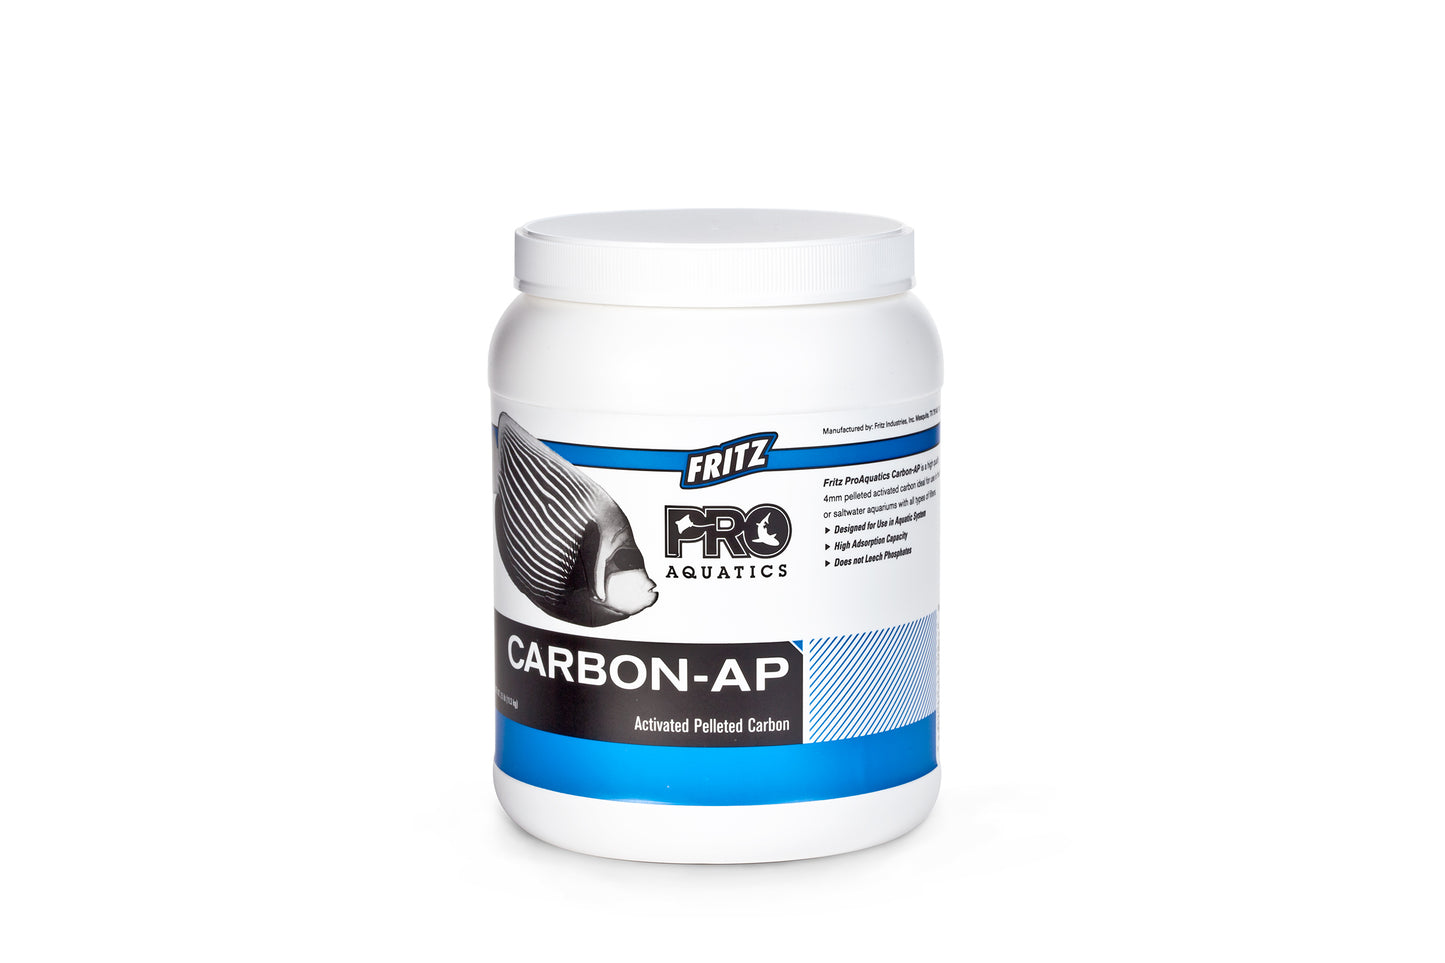 FritzPro Carbon-AP